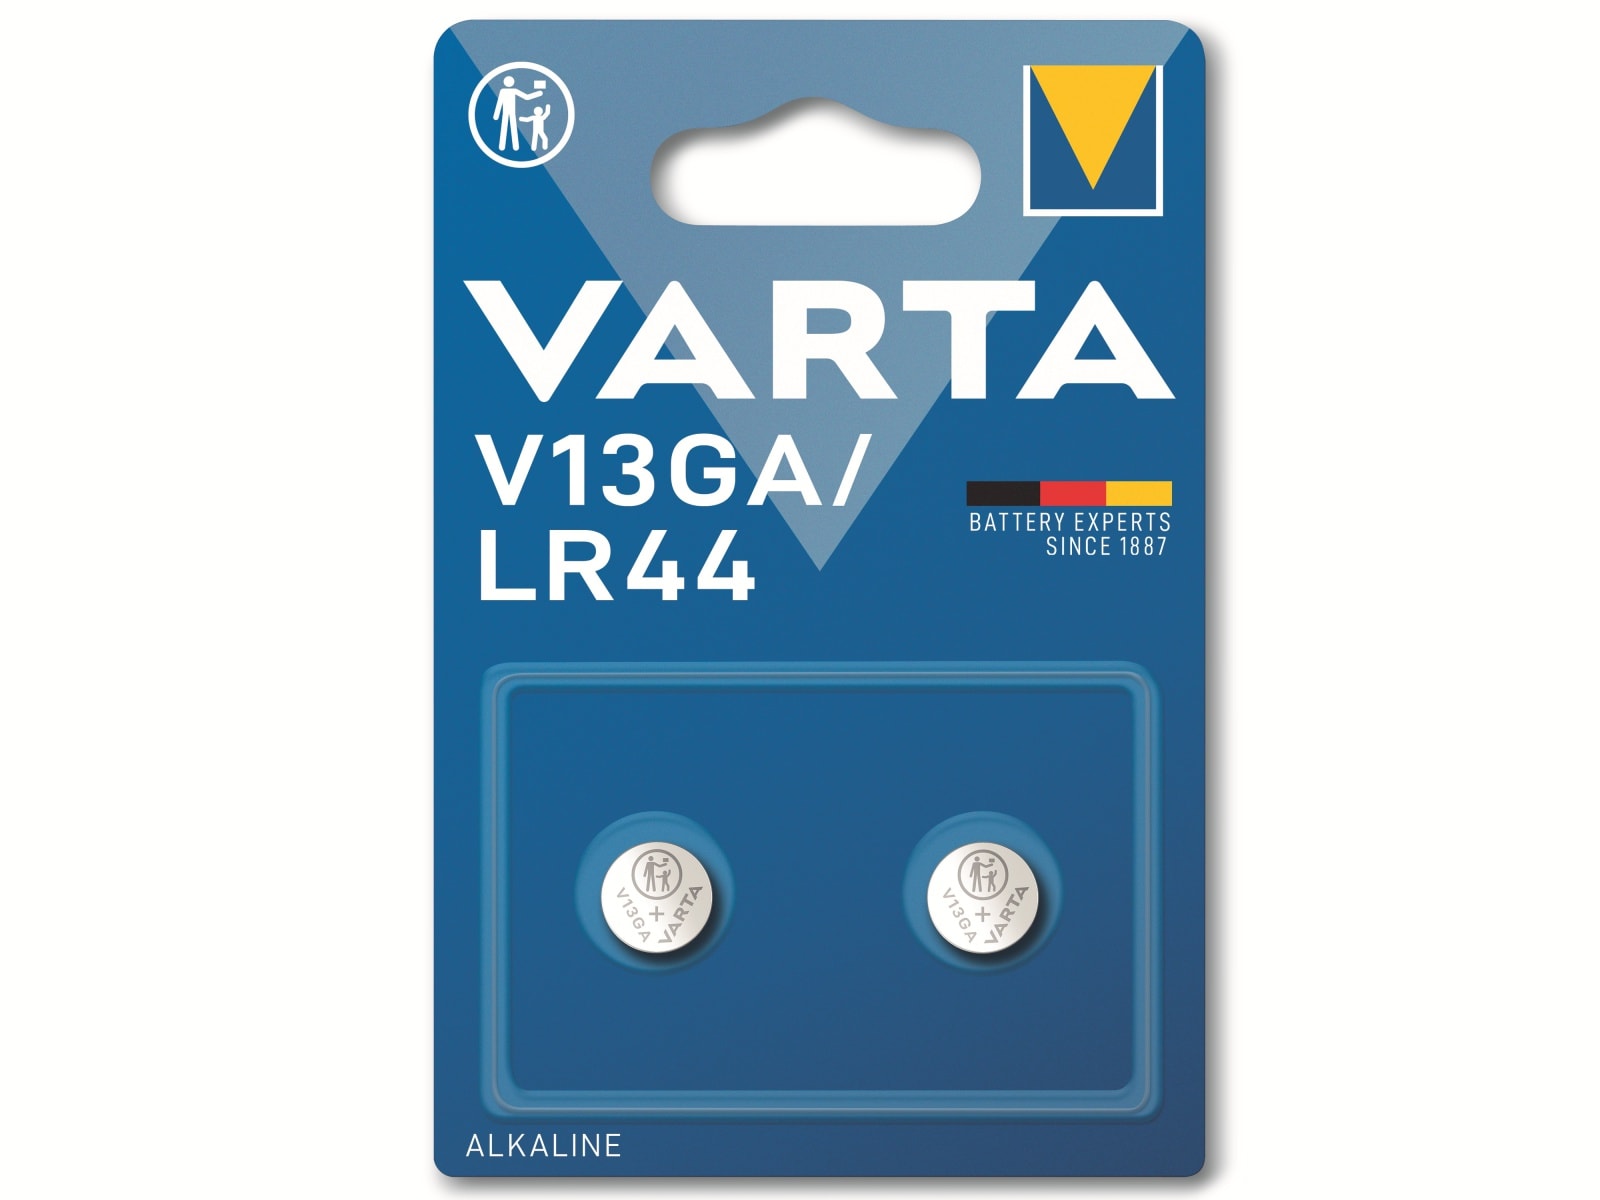 VARTA Knopfzelle Alkaline, LR44,  1.5V V13GA,  1.5V, 2 Stück